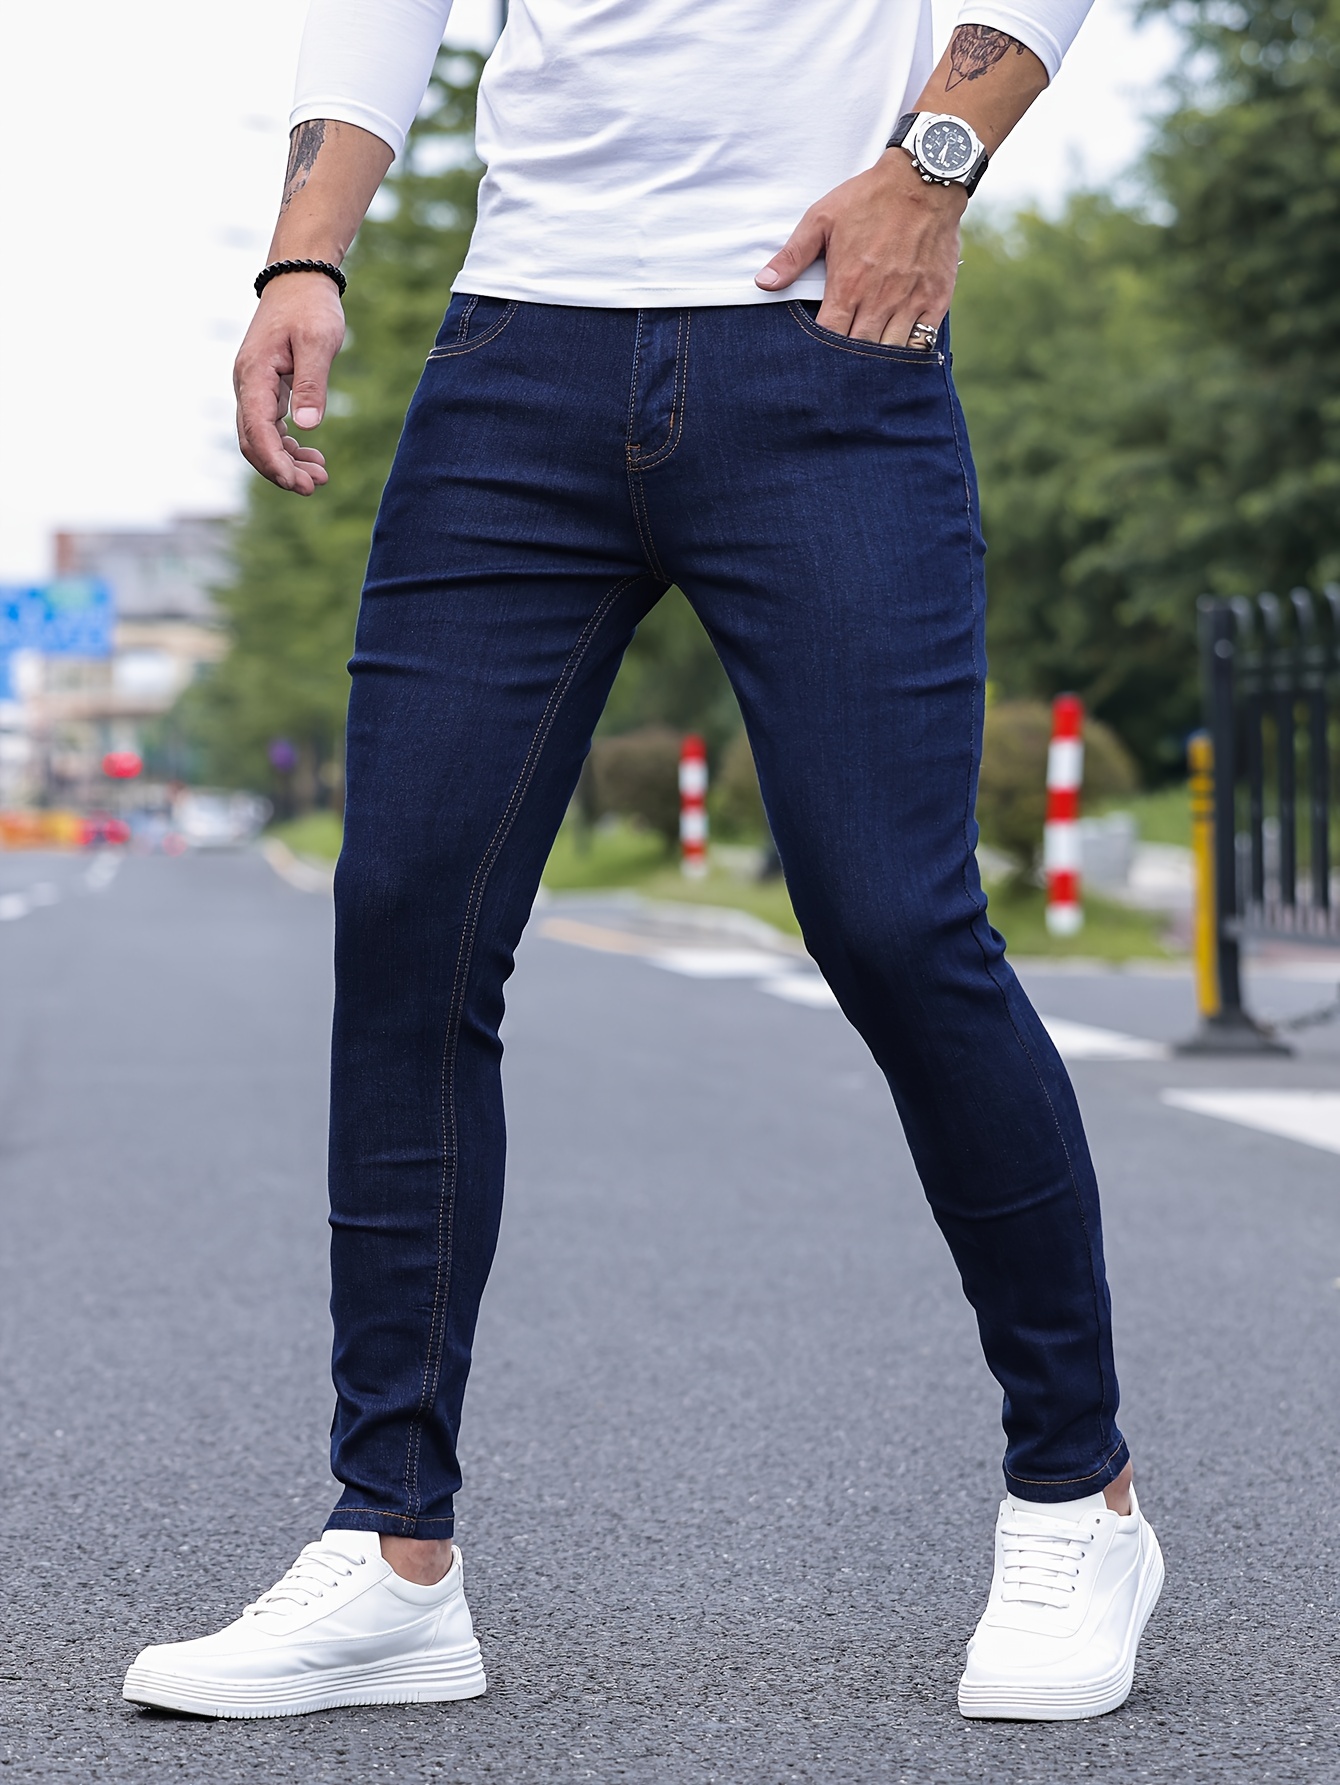 Skinny Jeans for men